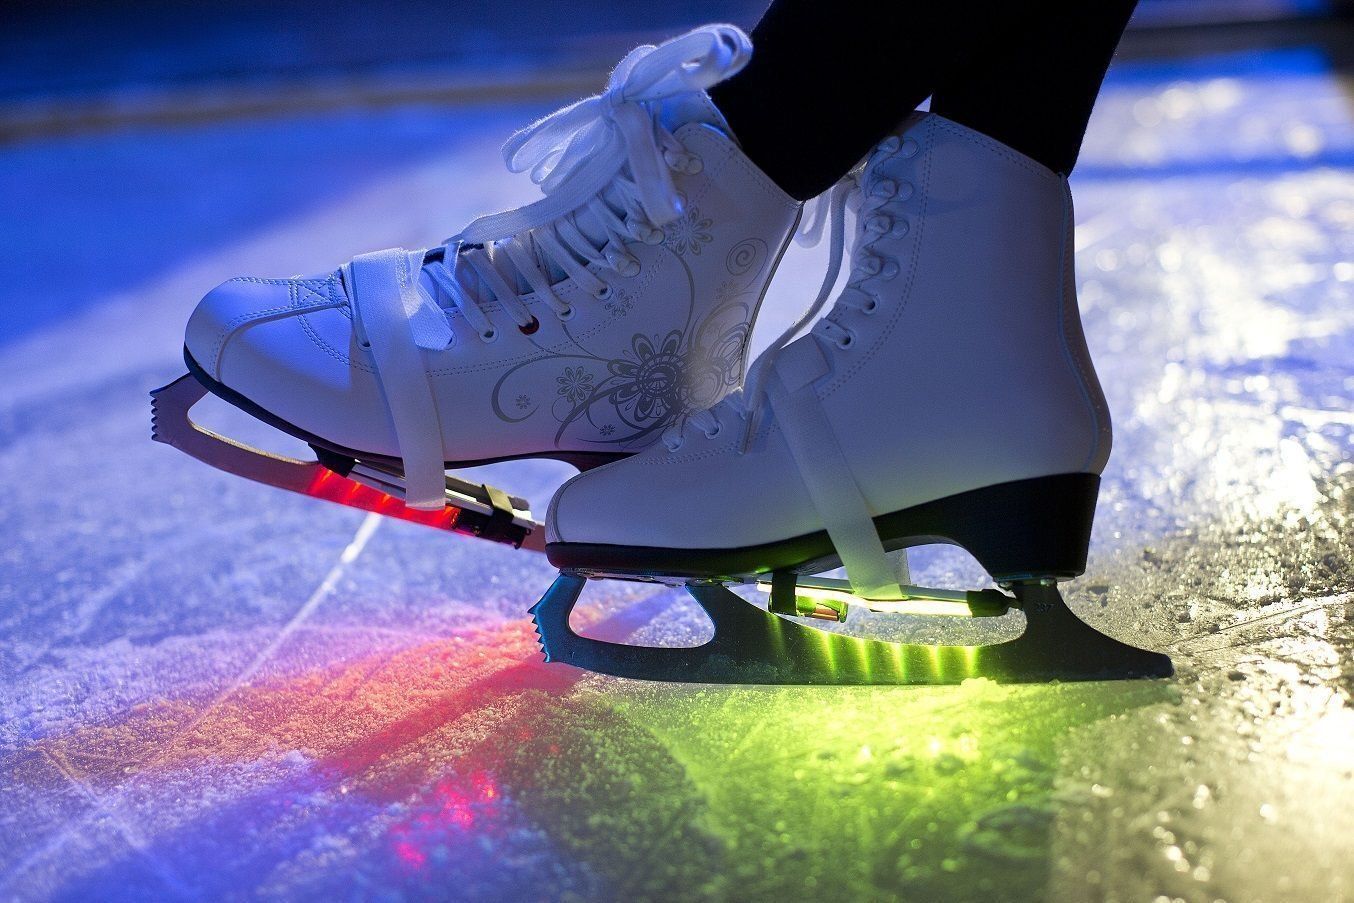 Valutazione delle migliori piste di pattinaggio su ghiaccio a Krasnoyarsk nel 2020